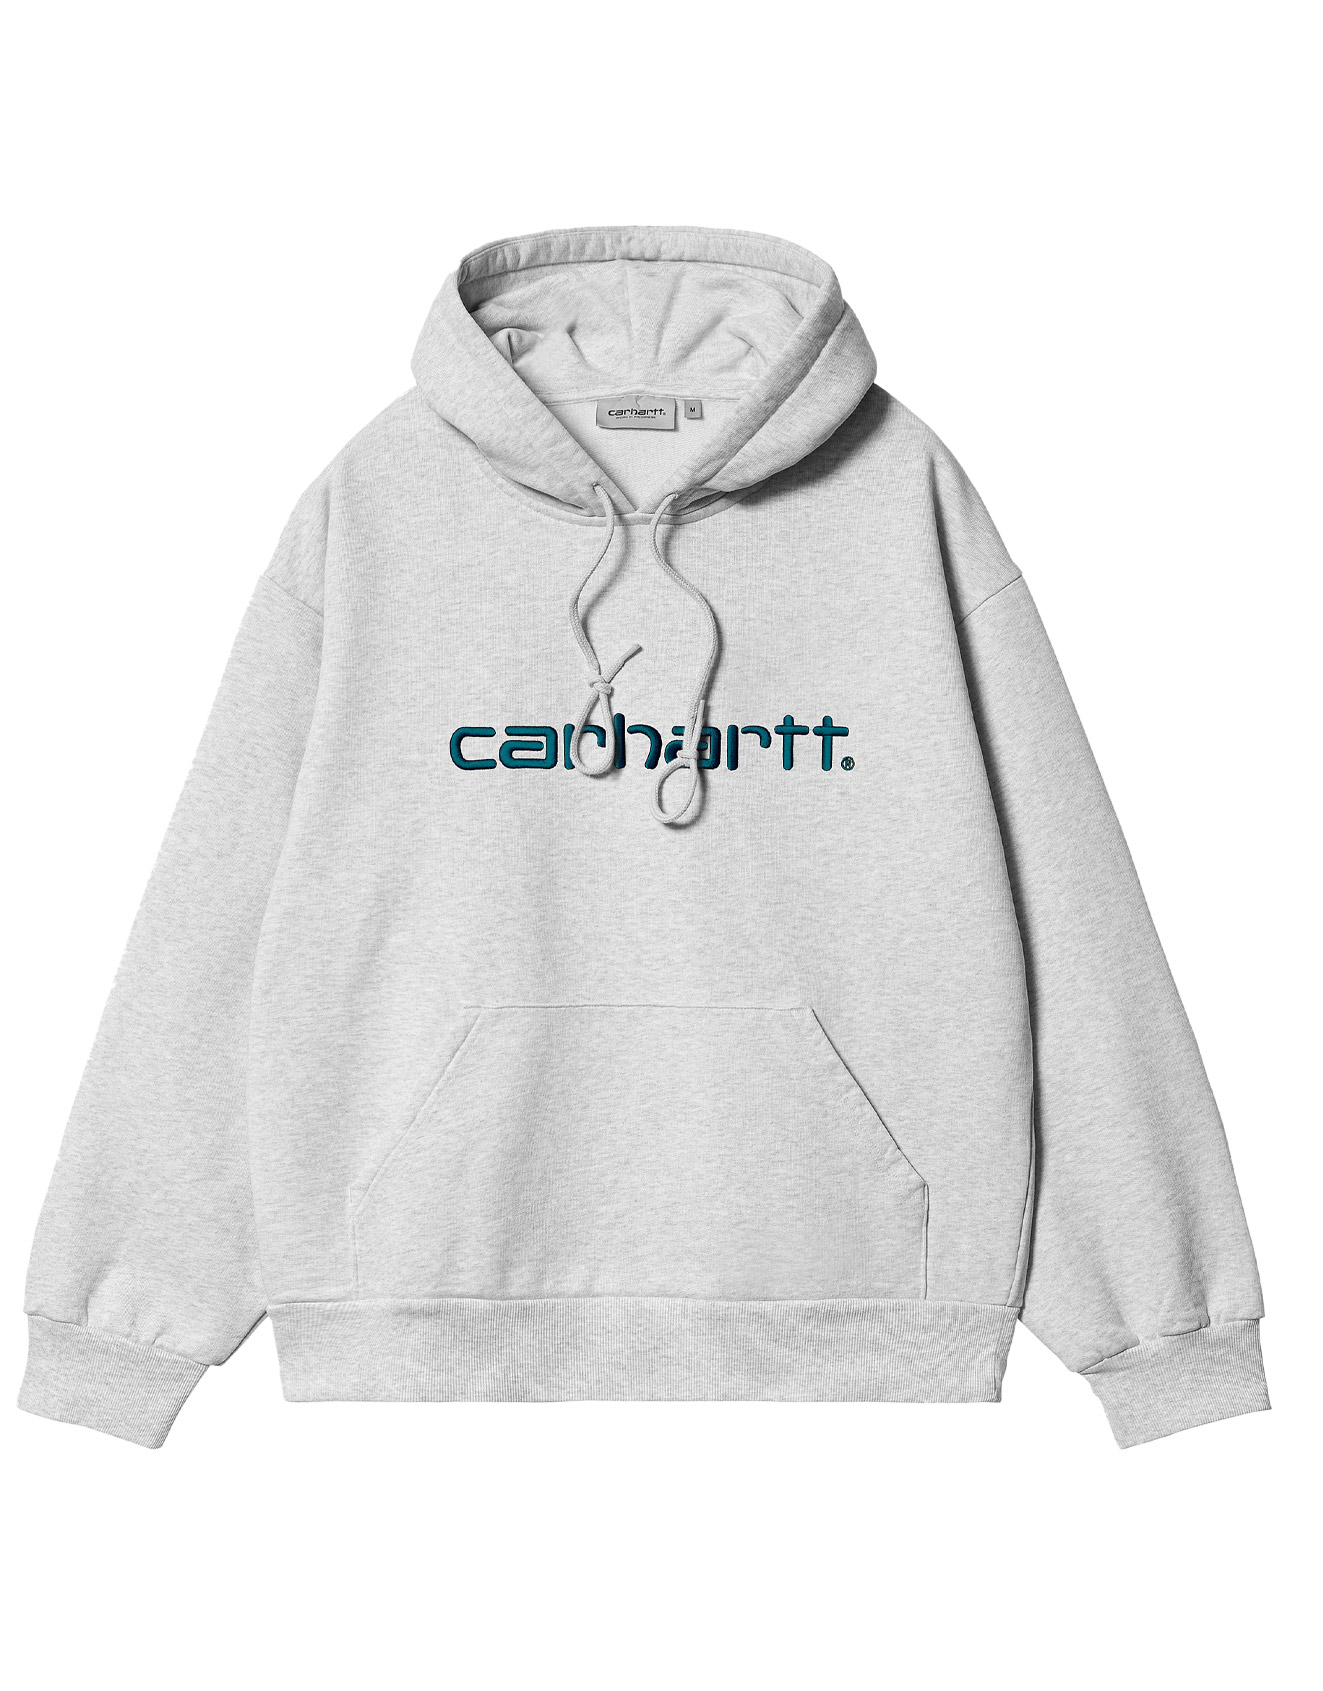 Carhartt WIP – Hooded Carhartt Sweatshirt